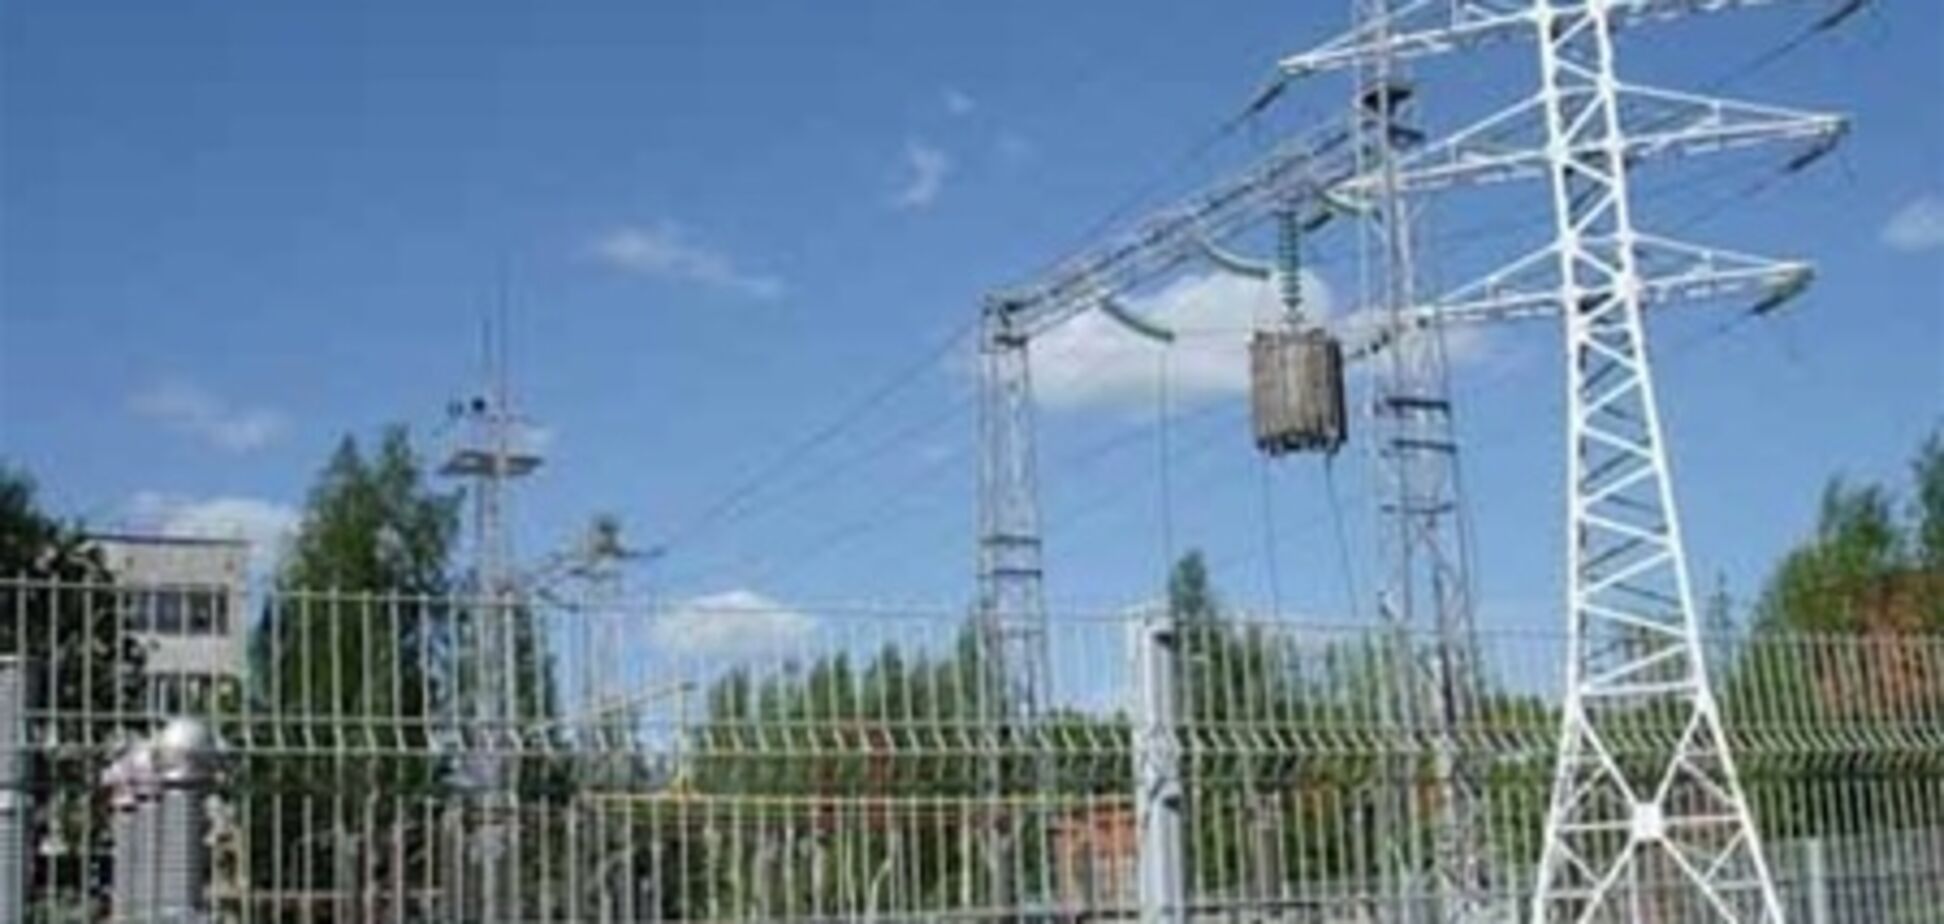 Ціна електроенергії для промисловості знизиться на 15-20%, якщо вона не буде субсидувати тариф для населення – Ковальчук